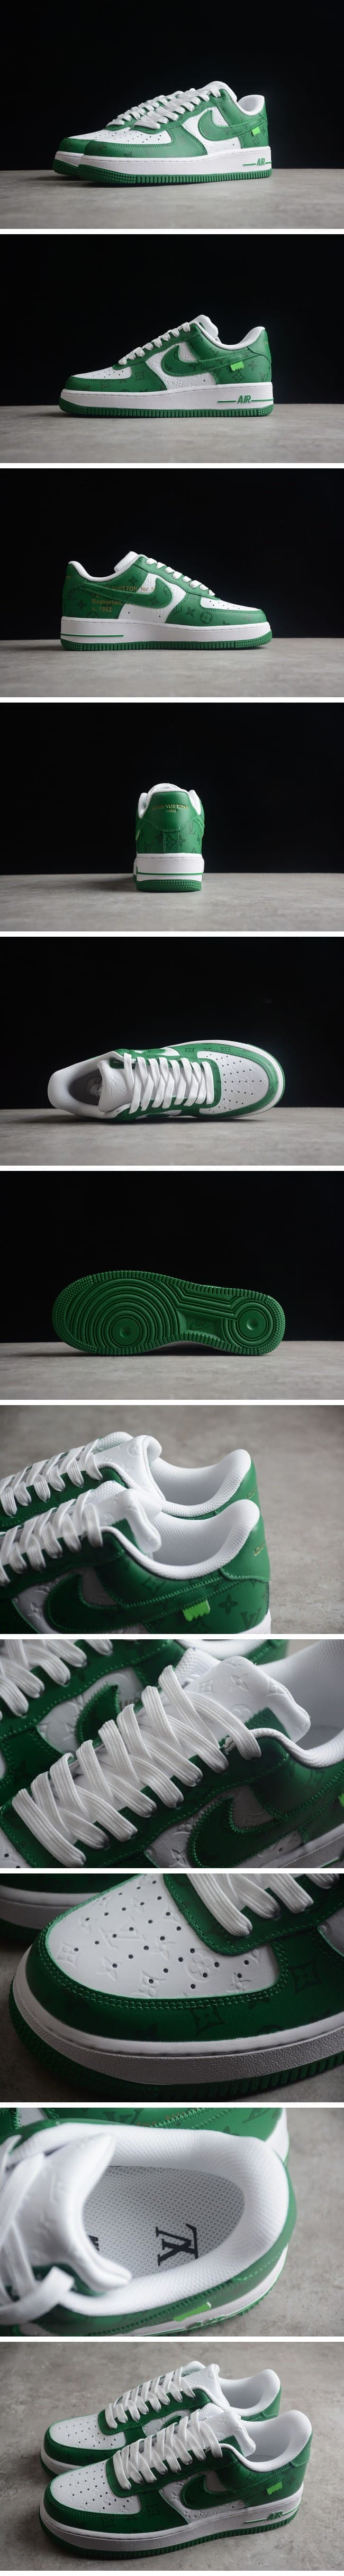 【期間限定】Louis Vuitton Nike Air Force 1 Low By Virgil Abloh White Green ルイ・ヴィトン x ナイキエアフォース1 ローバイヴァージルアブロー ホワイト/グリーン